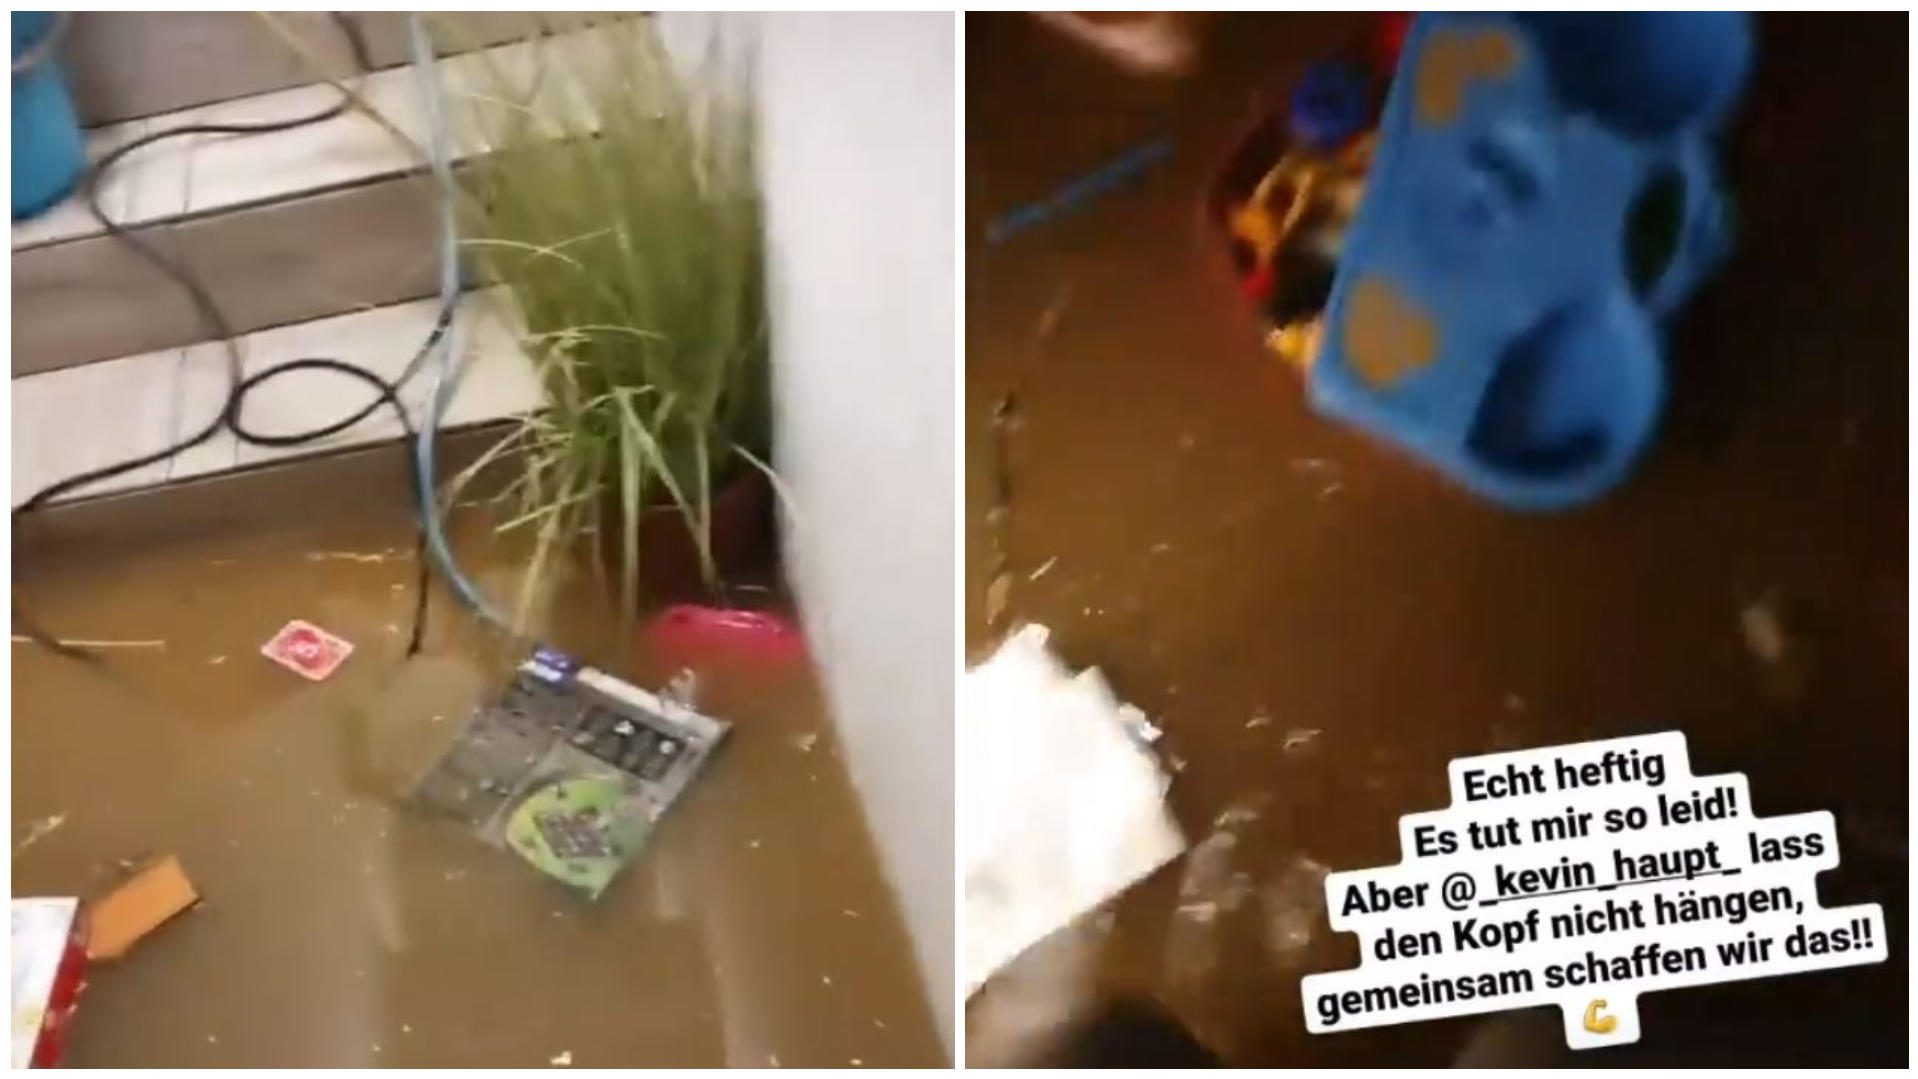 Kevin Haupt zeigt sein überflutetes Untergeschoss. Die Spielzeuge seiner Kinder schwimmen im Wasser umher.